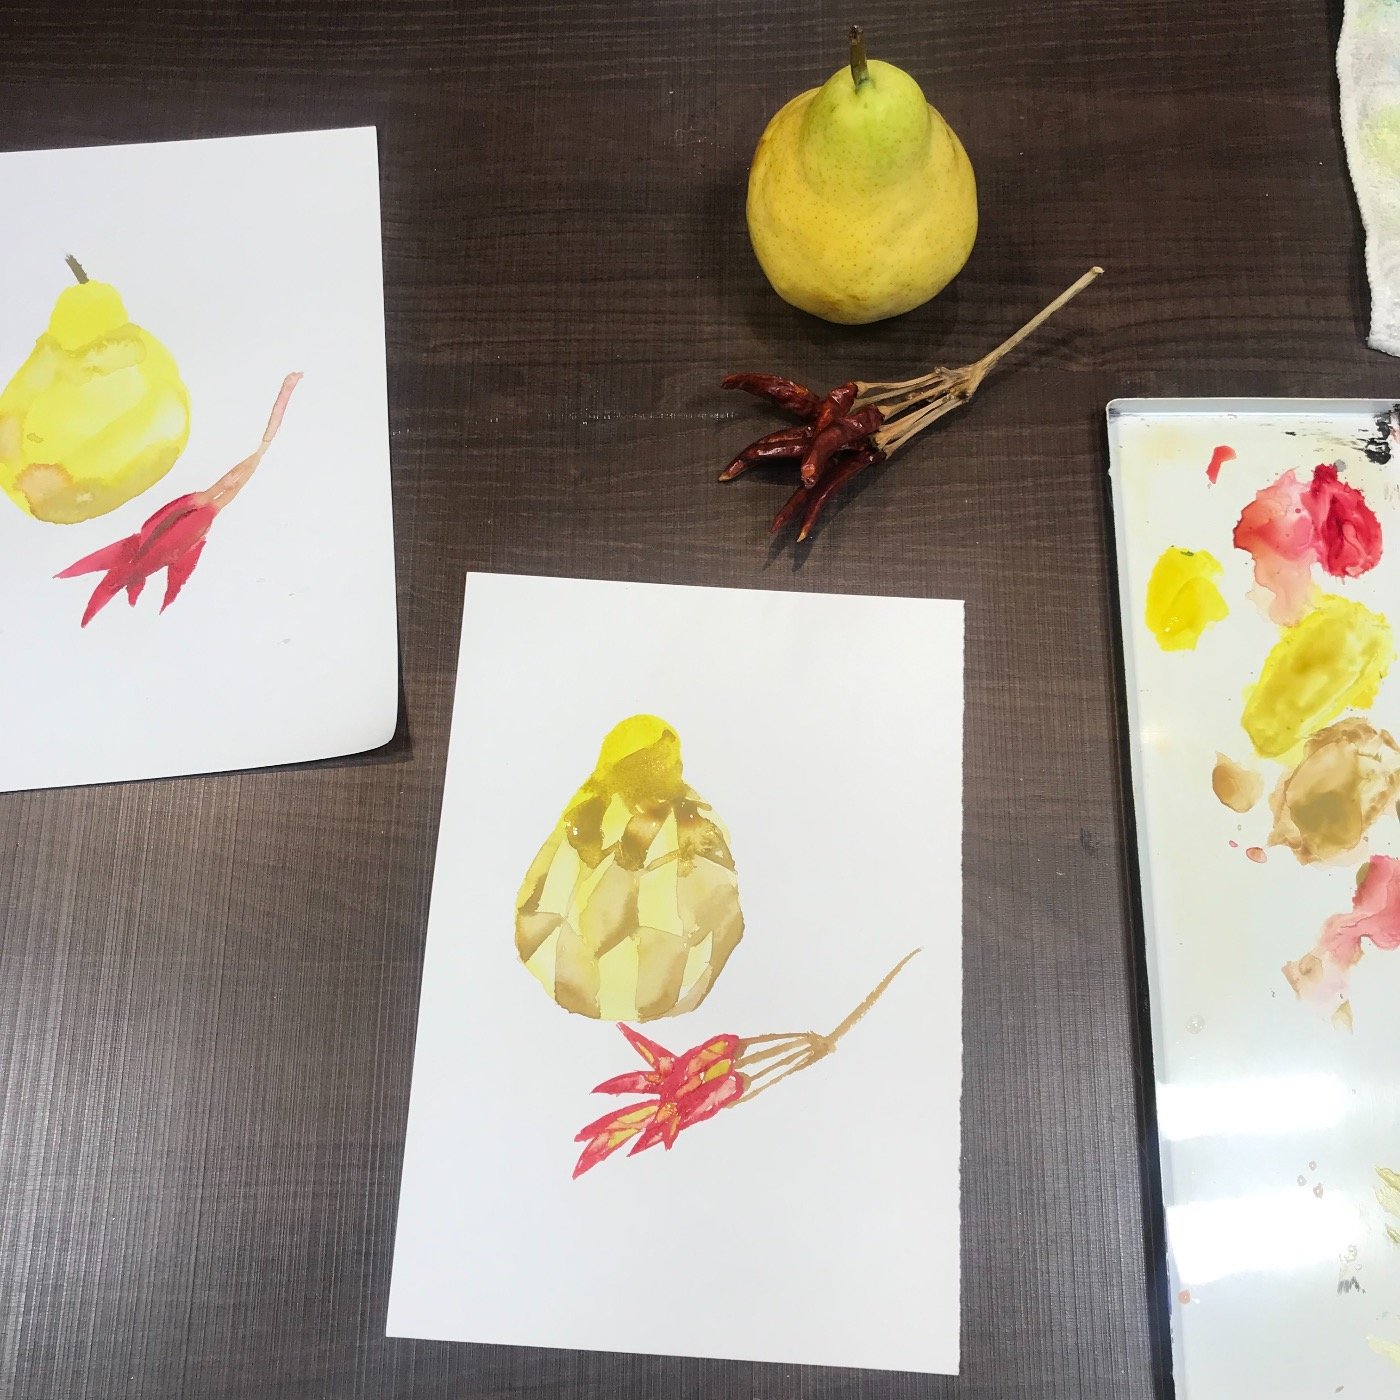 絵画教室ブログ 小学生の生徒さん作品 絵画教室ブログ ブログ 基礎のデッサン 水彩画から洋画 油彩画 日本画まで